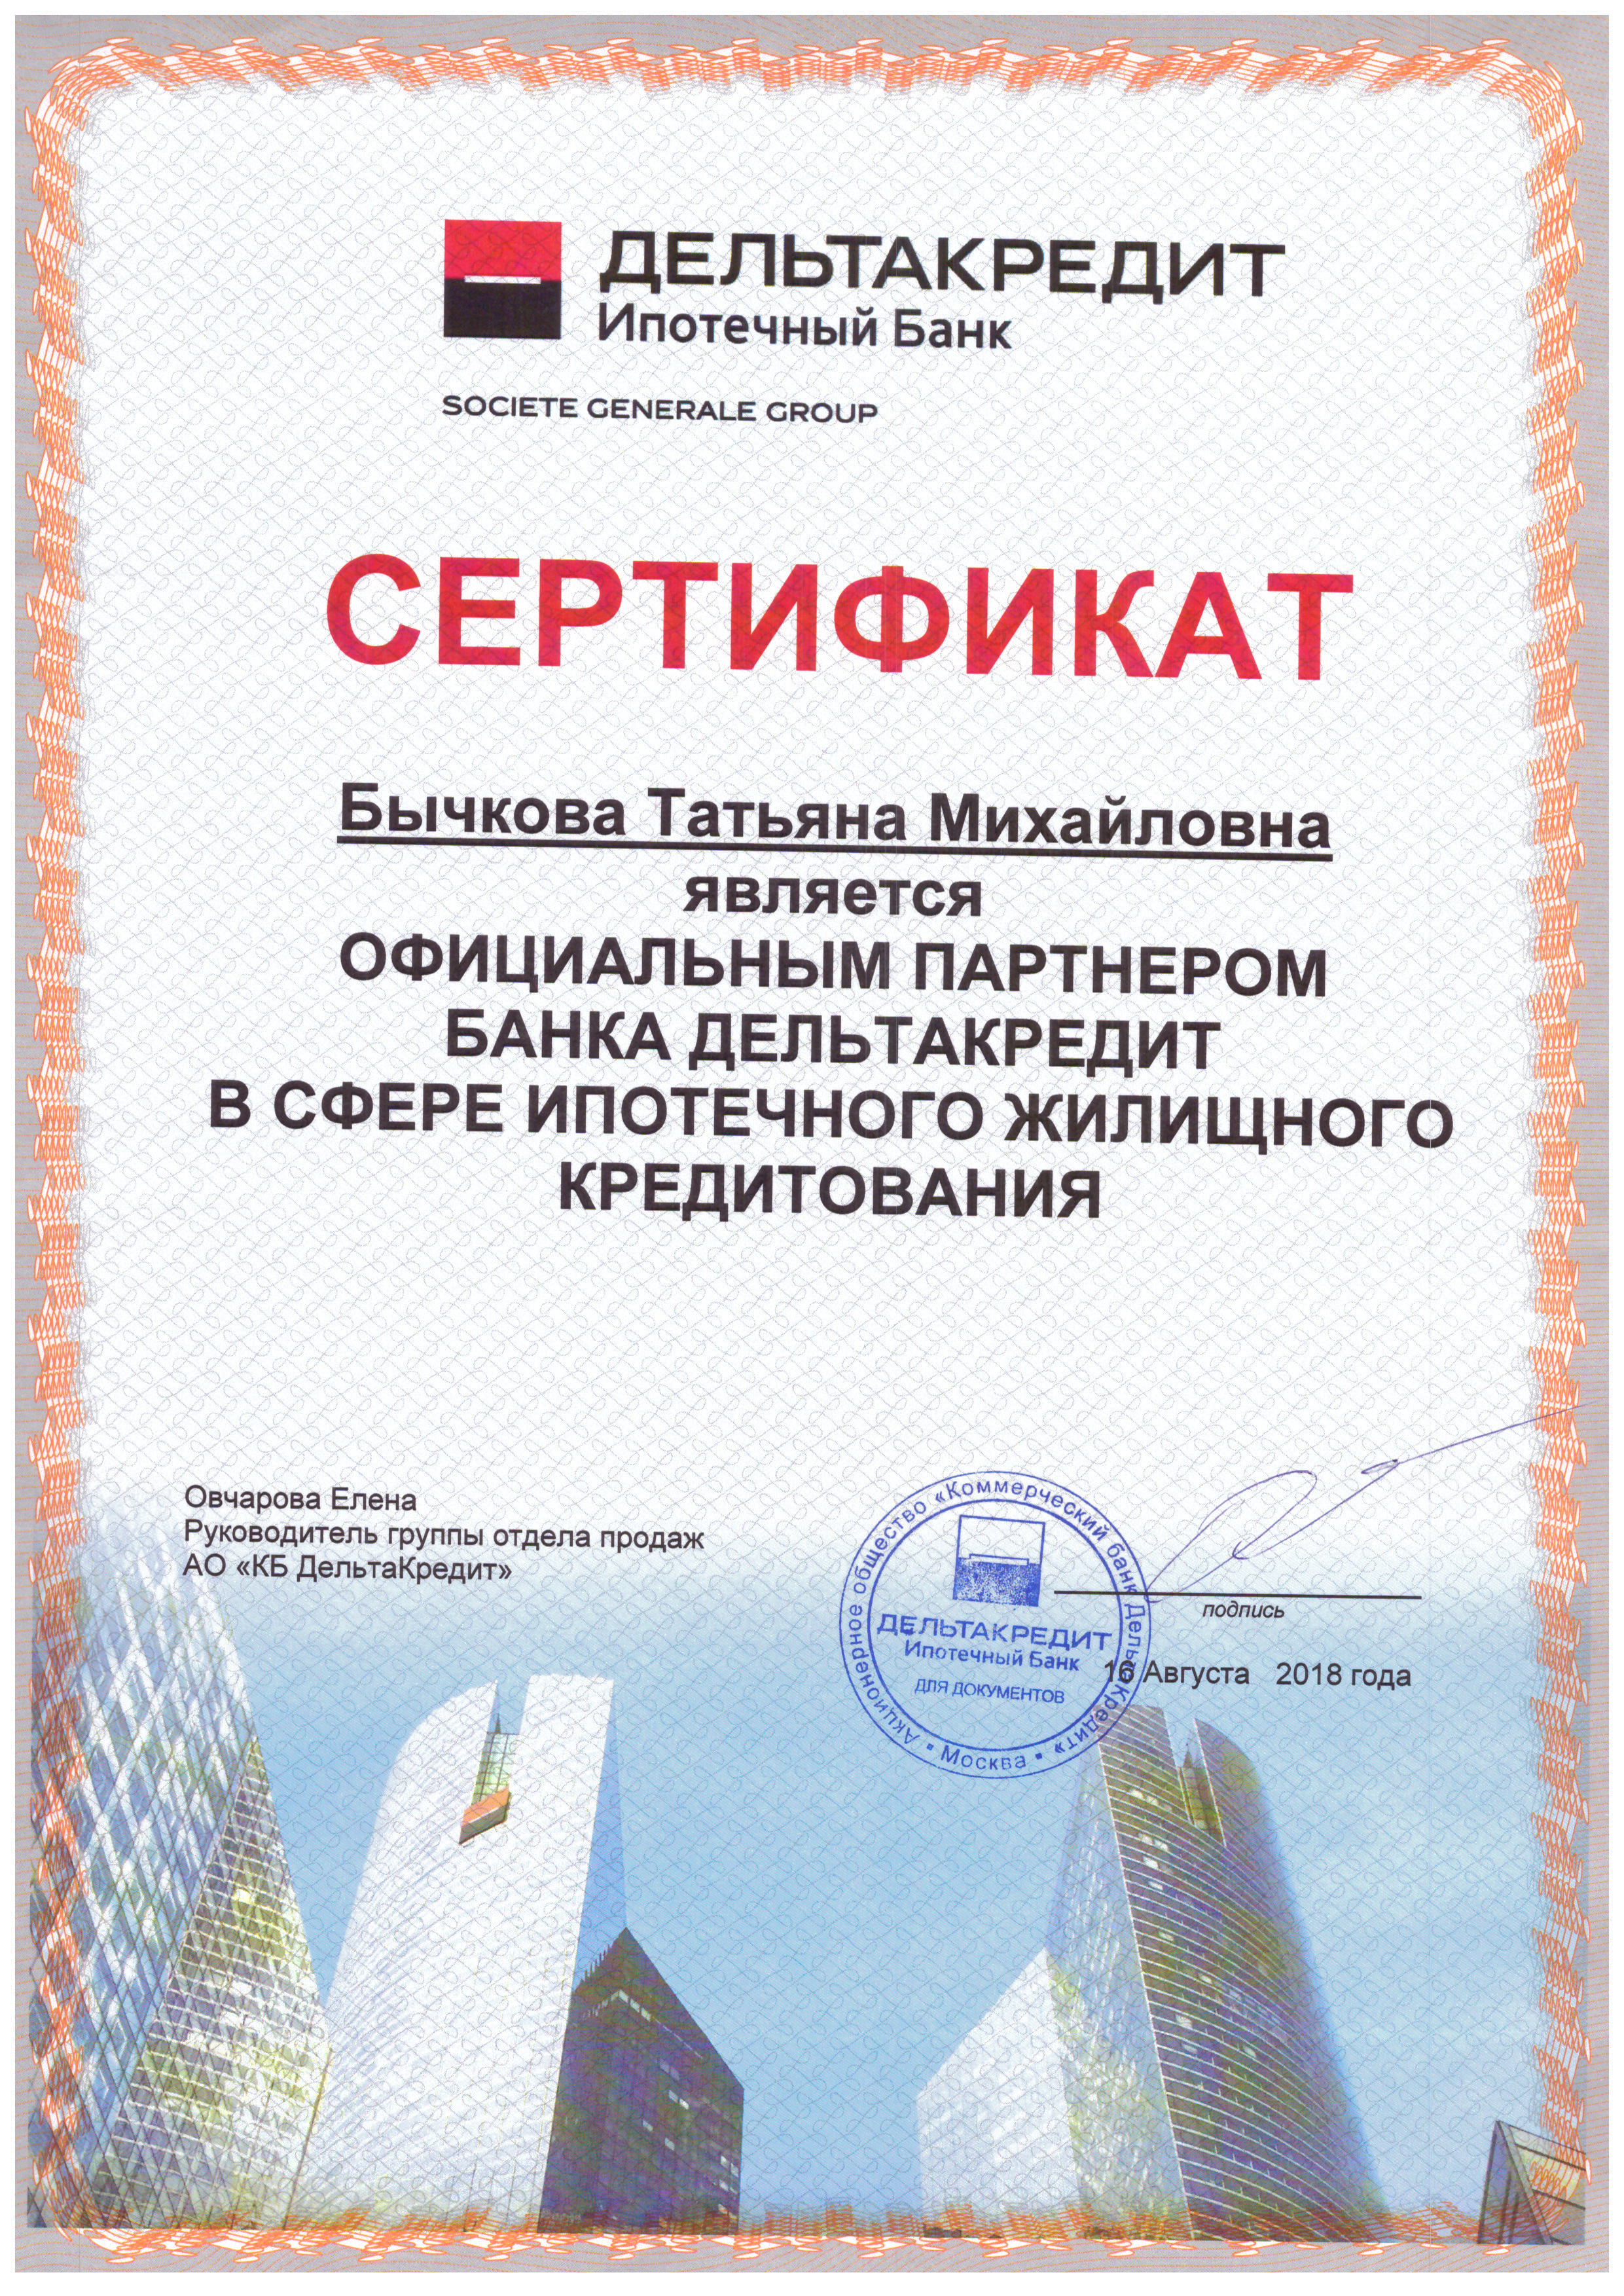 bychkovatm_sertifikat_bank_deltakredit_ipoteka_082018.jpg